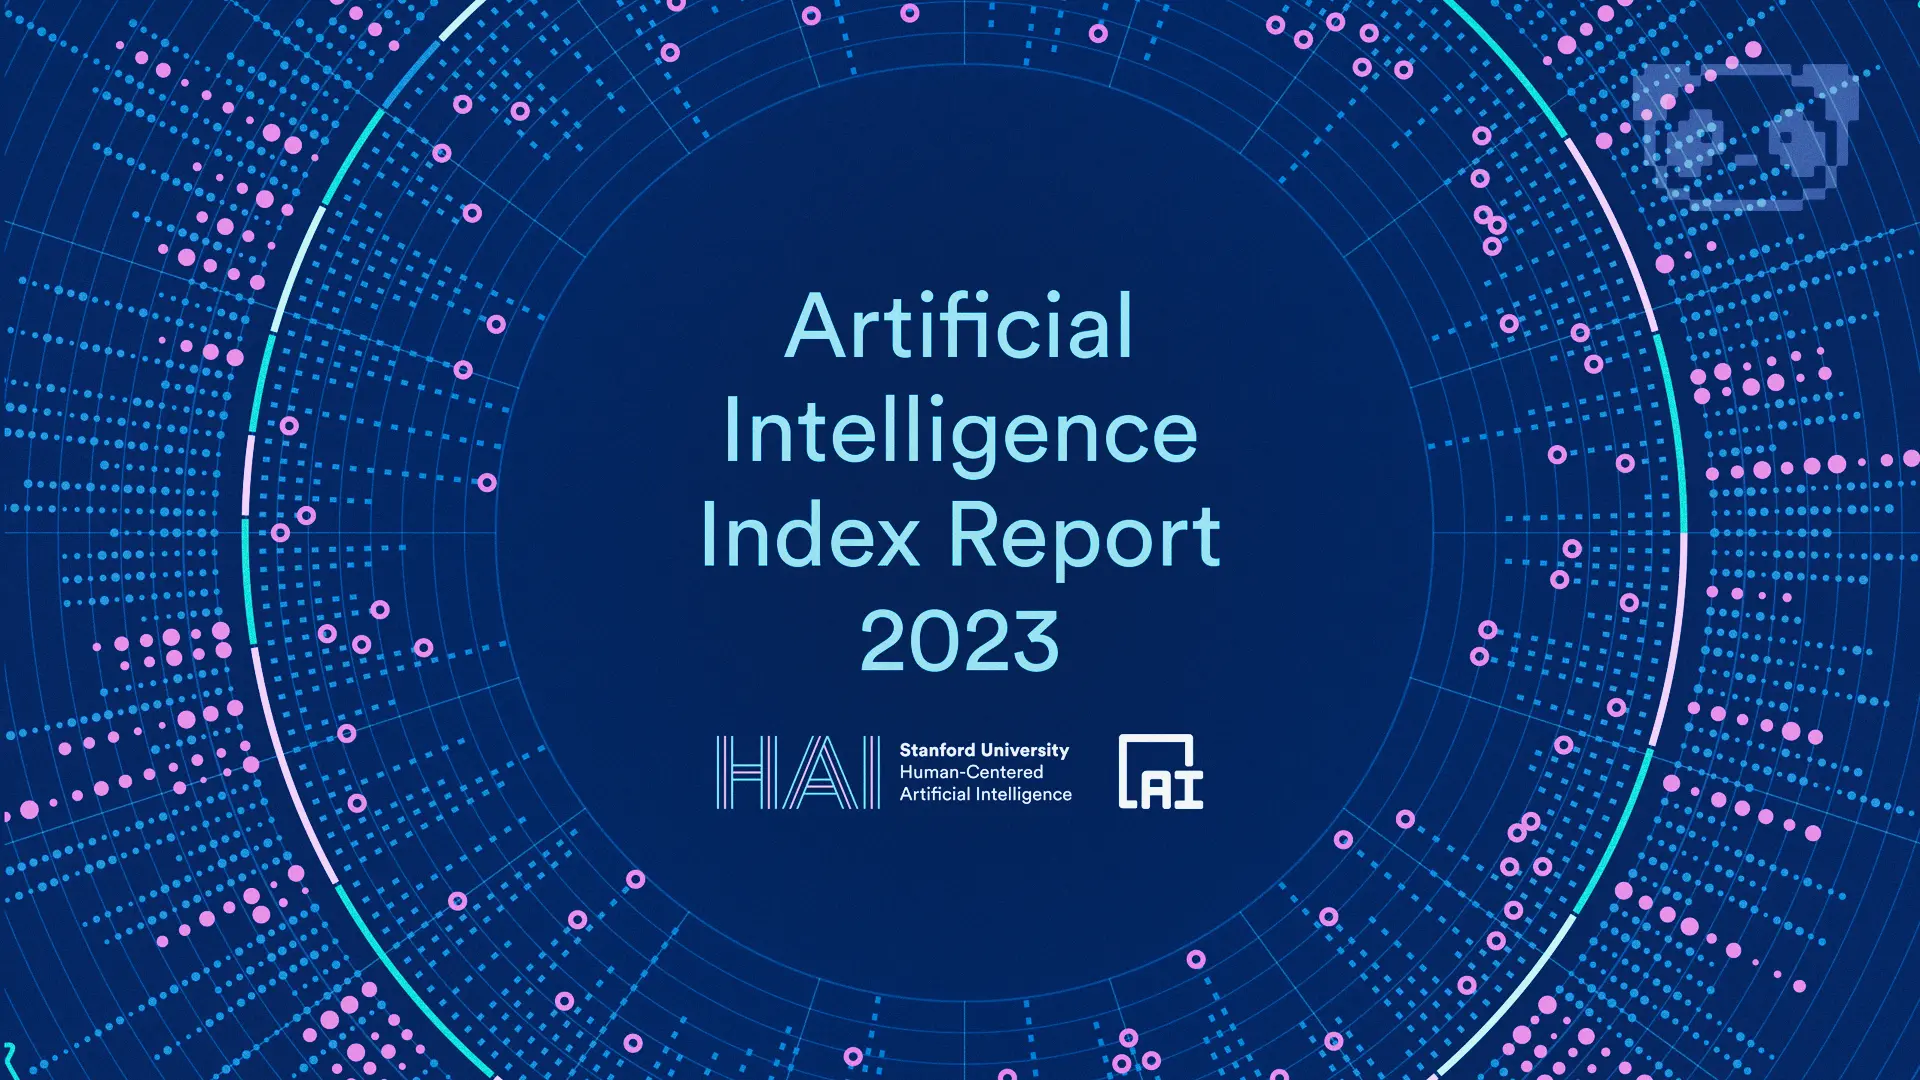 Le rapport AI Index 2023 de Stanford University un aperçu de l